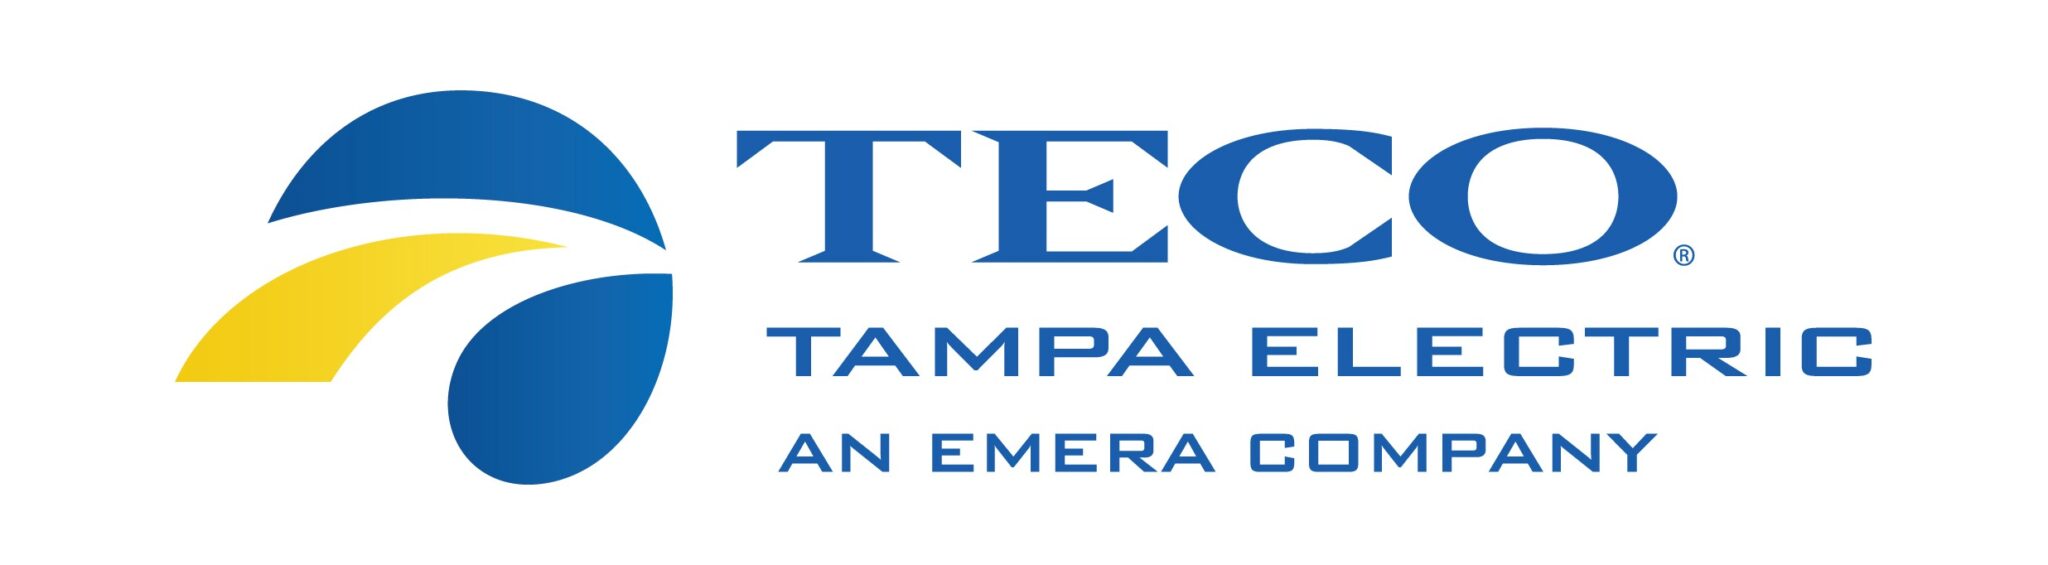 tampa electric logo